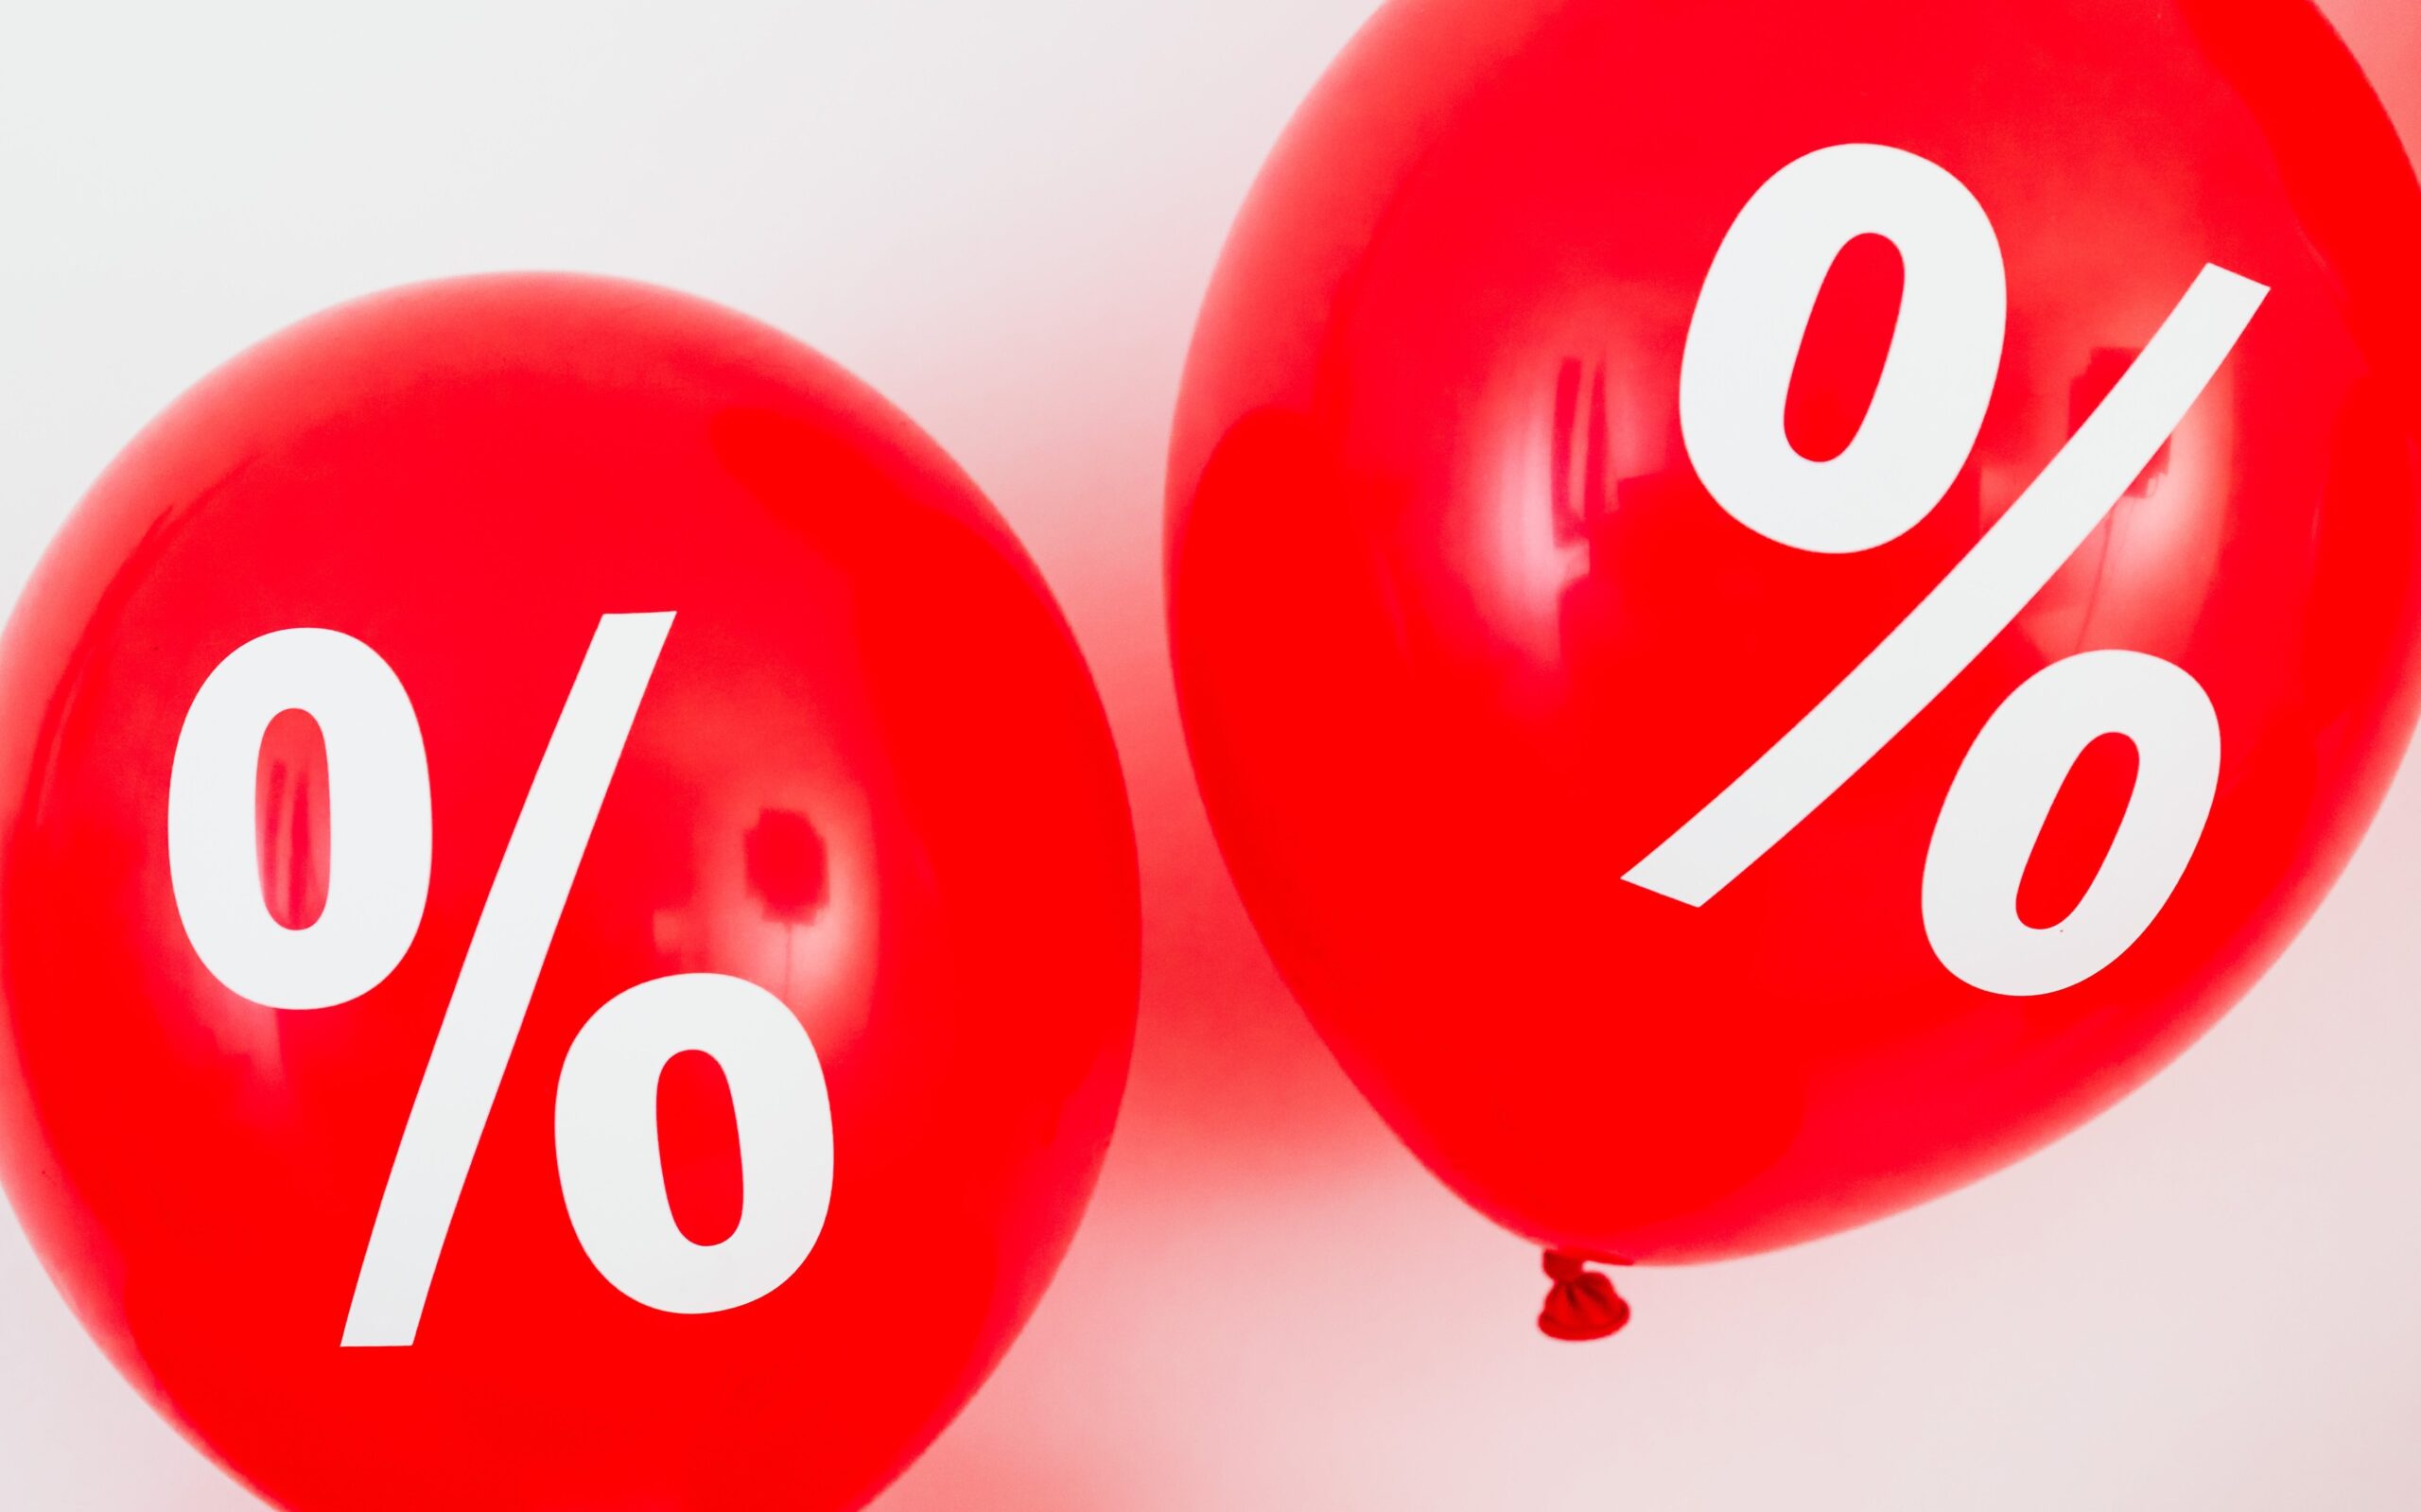 Rote Ballons mit Prozentzeichen: Manche Texte sind sehr kurz